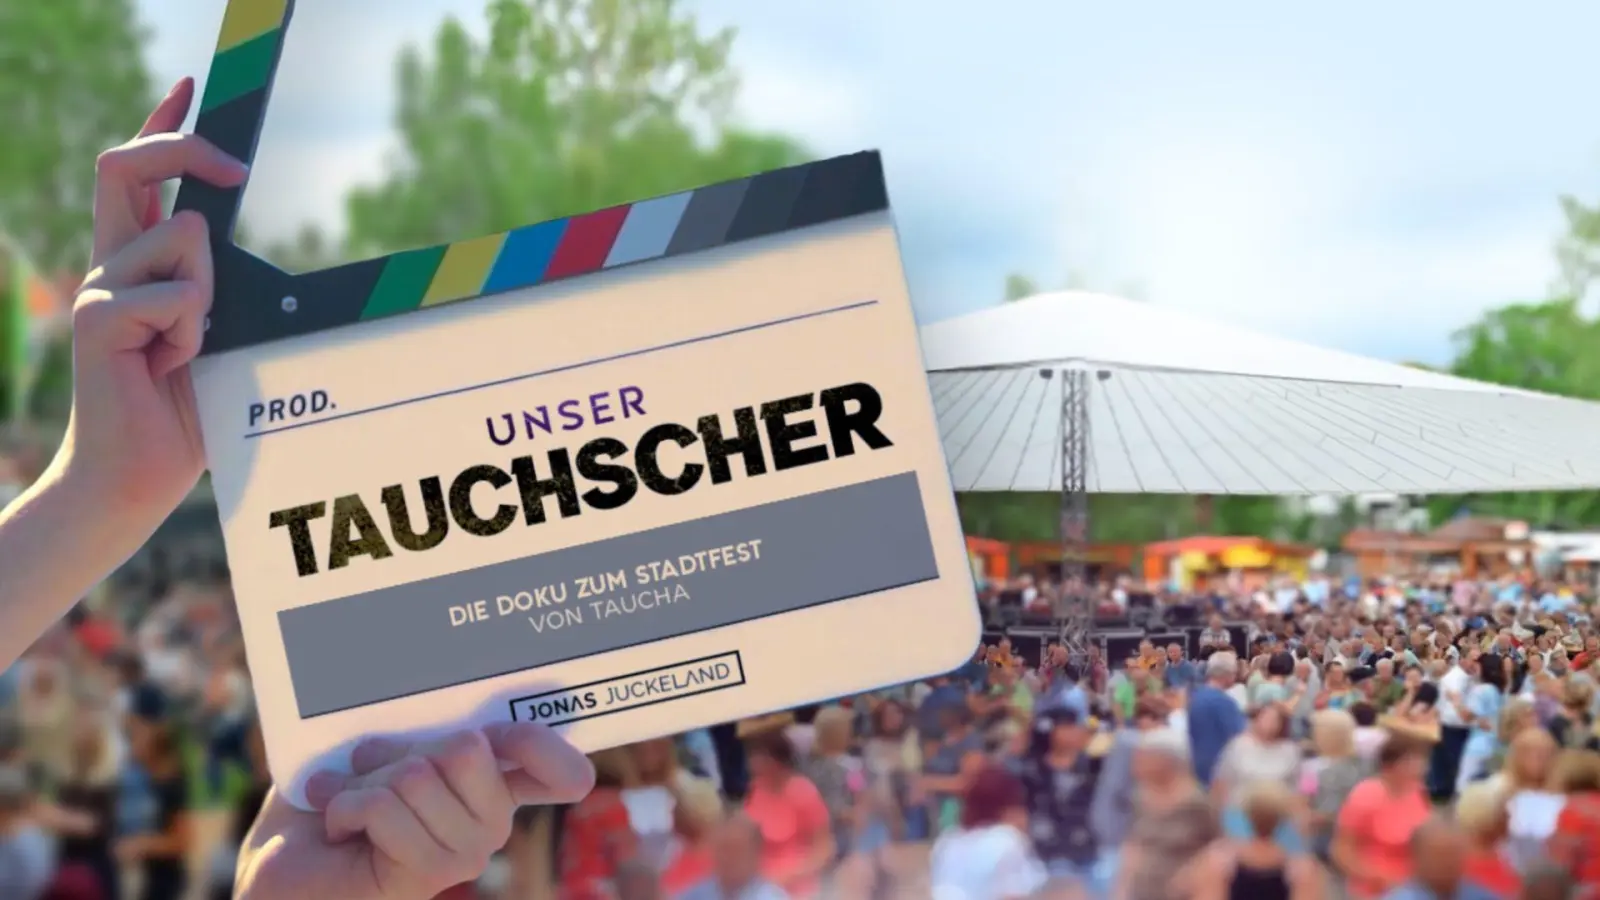 „Unser Tauchscher”: Jonas Juckeland startet Crowdfunding für neuen Film (Foto: taucha-kompakt.de)